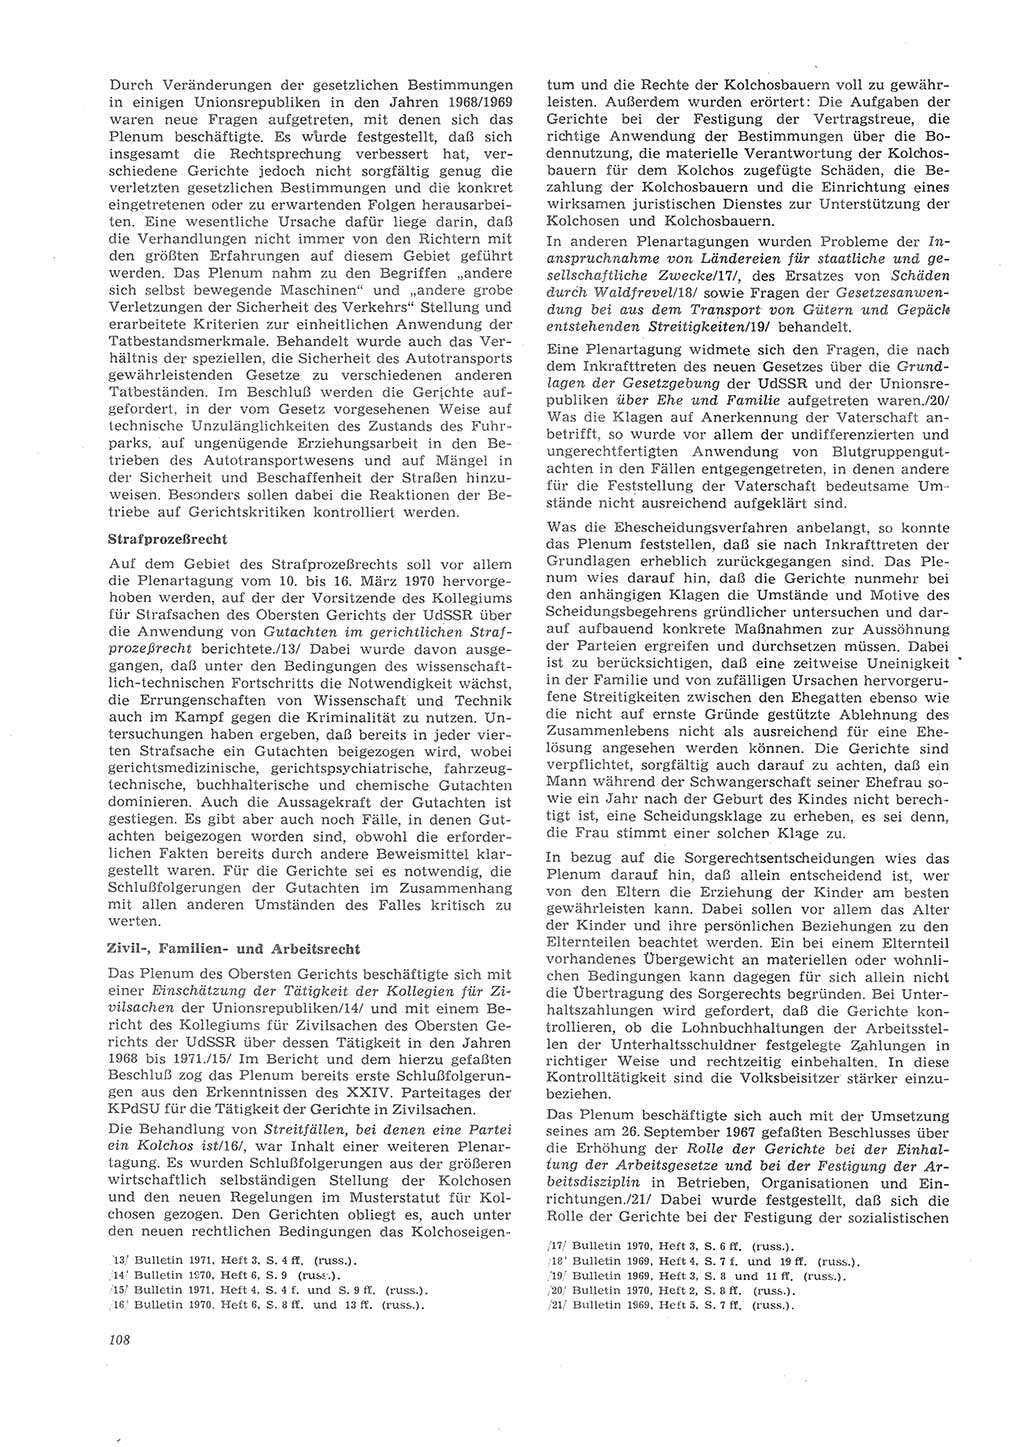 Neue Justiz (NJ), Zeitschrift für Recht und Rechtswissenschaft [Deutsche Demokratische Republik (DDR)], 26. Jahrgang 1972, Seite 108 (NJ DDR 1972, S. 108)